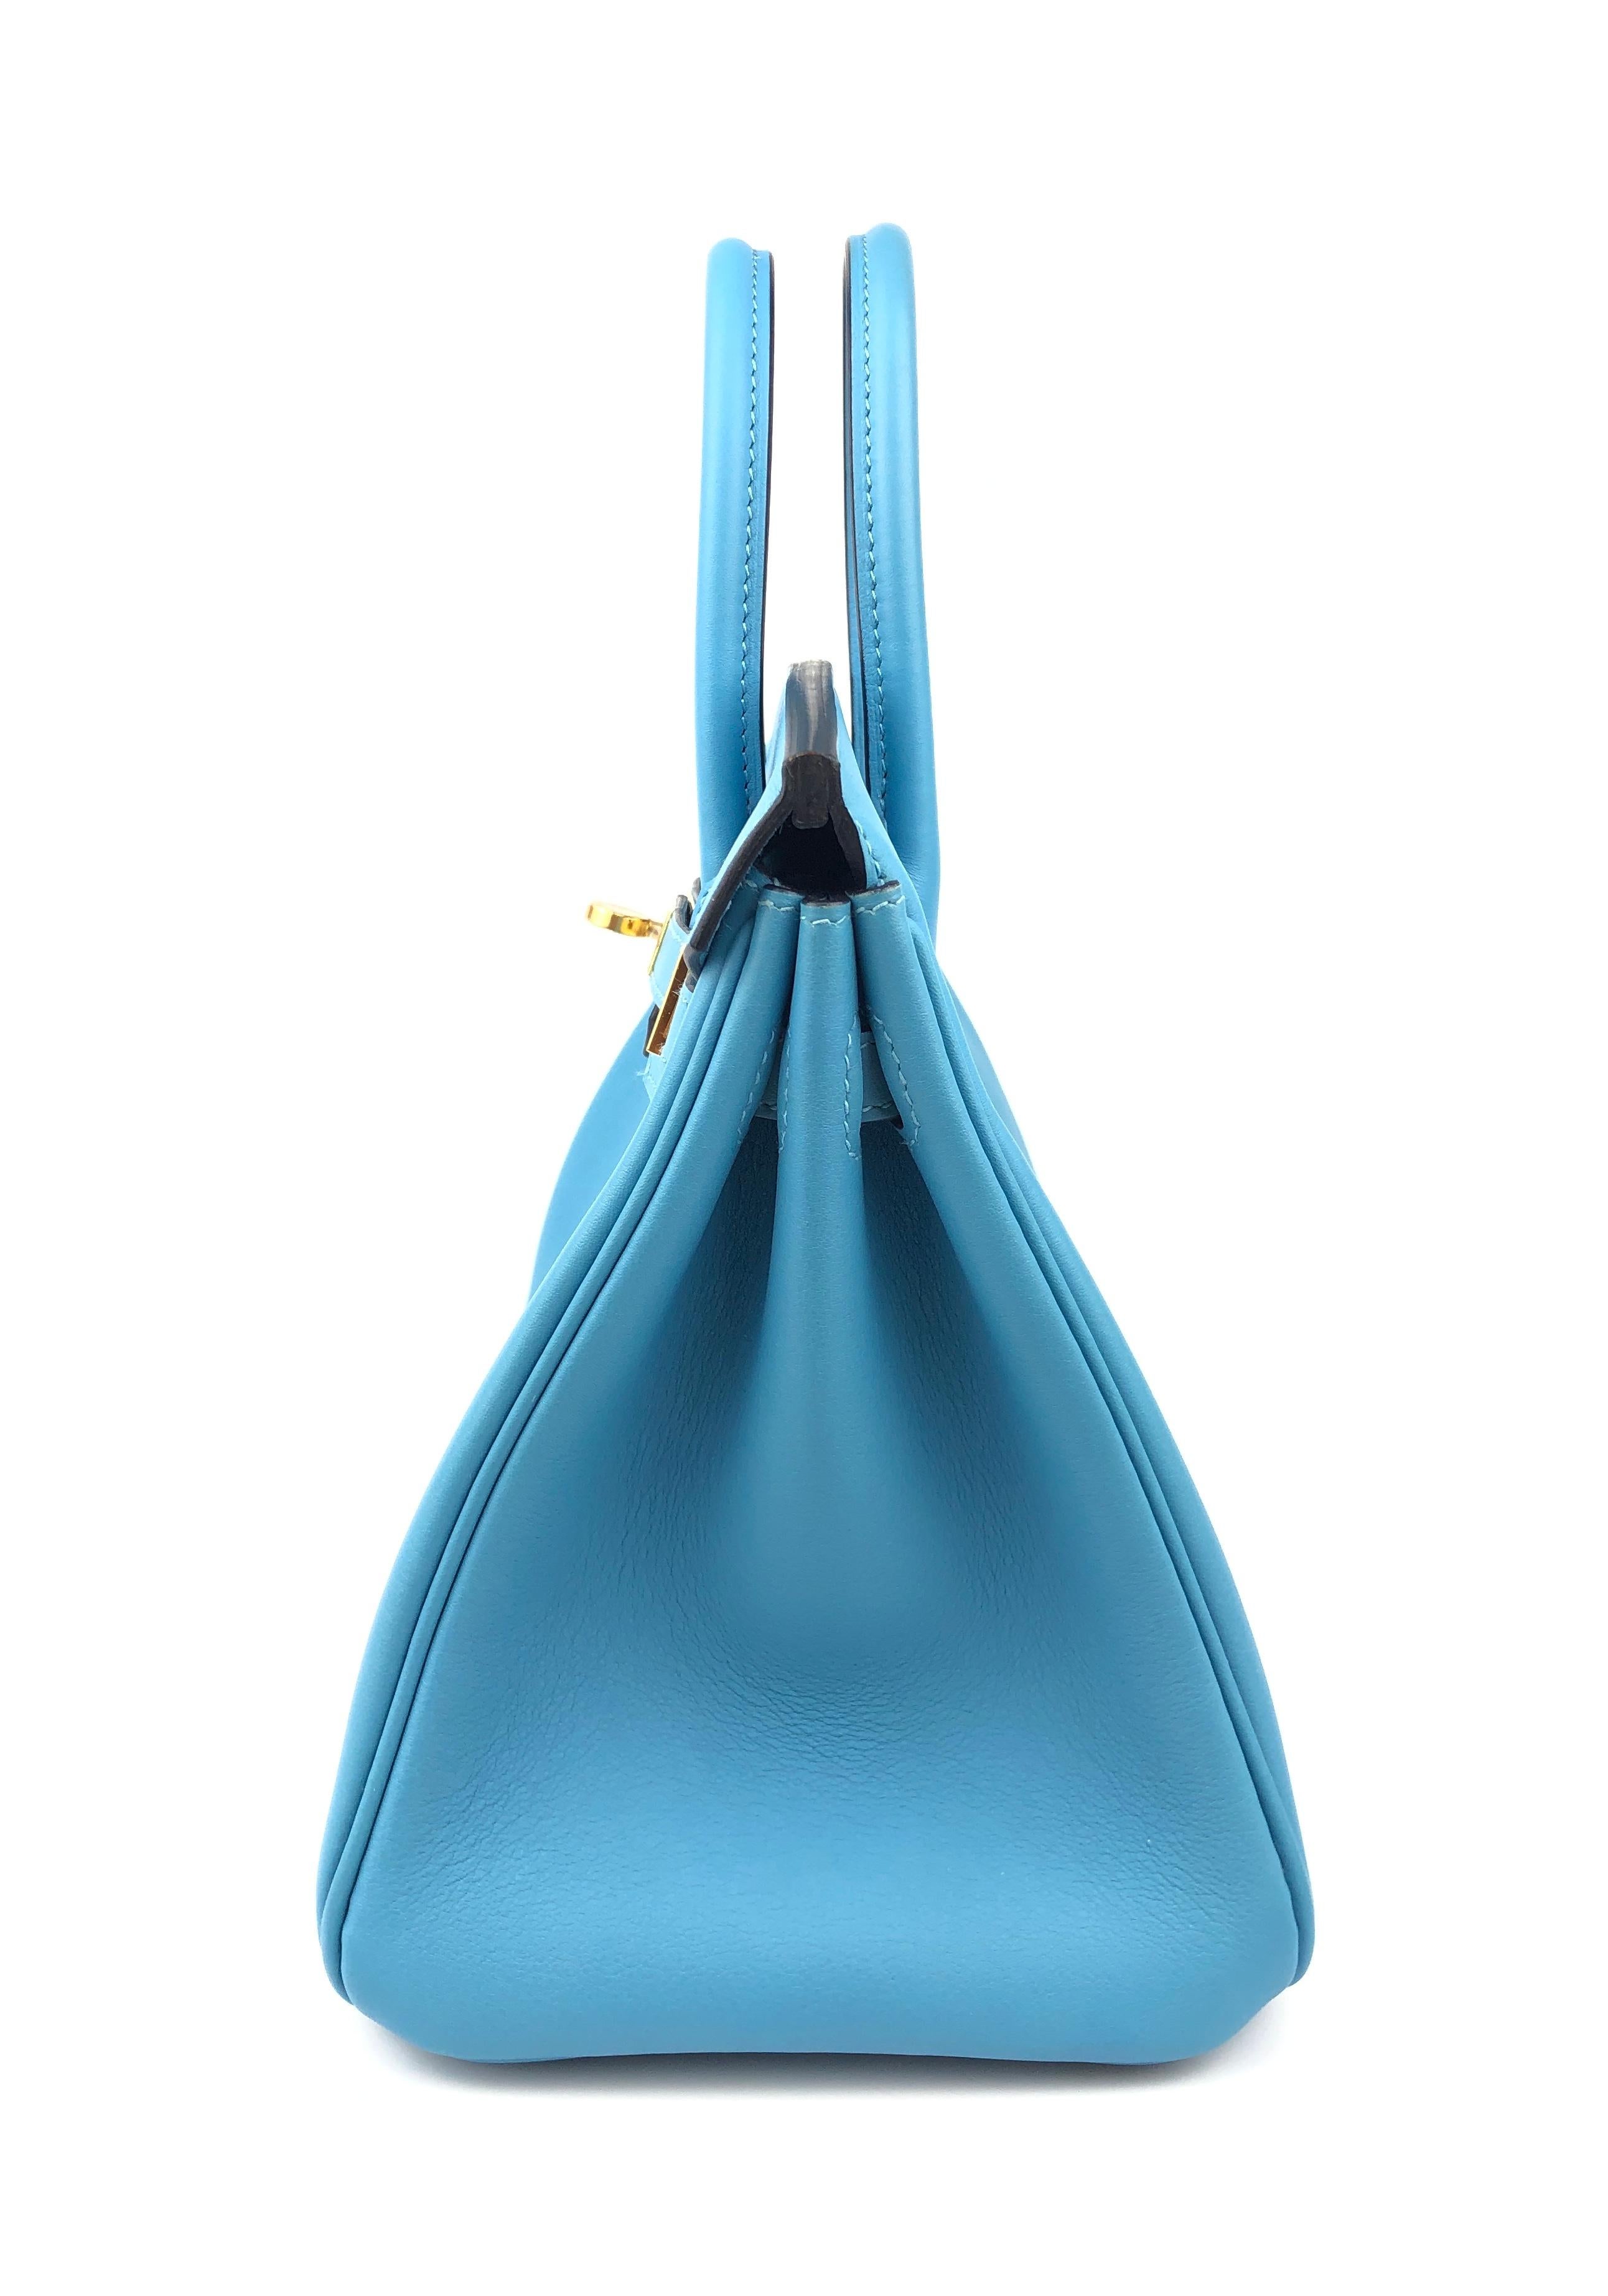 Hermes Birkin 25 Blue Bleu du Nord Leather Handbag Bag Gold Hardware RARE 1